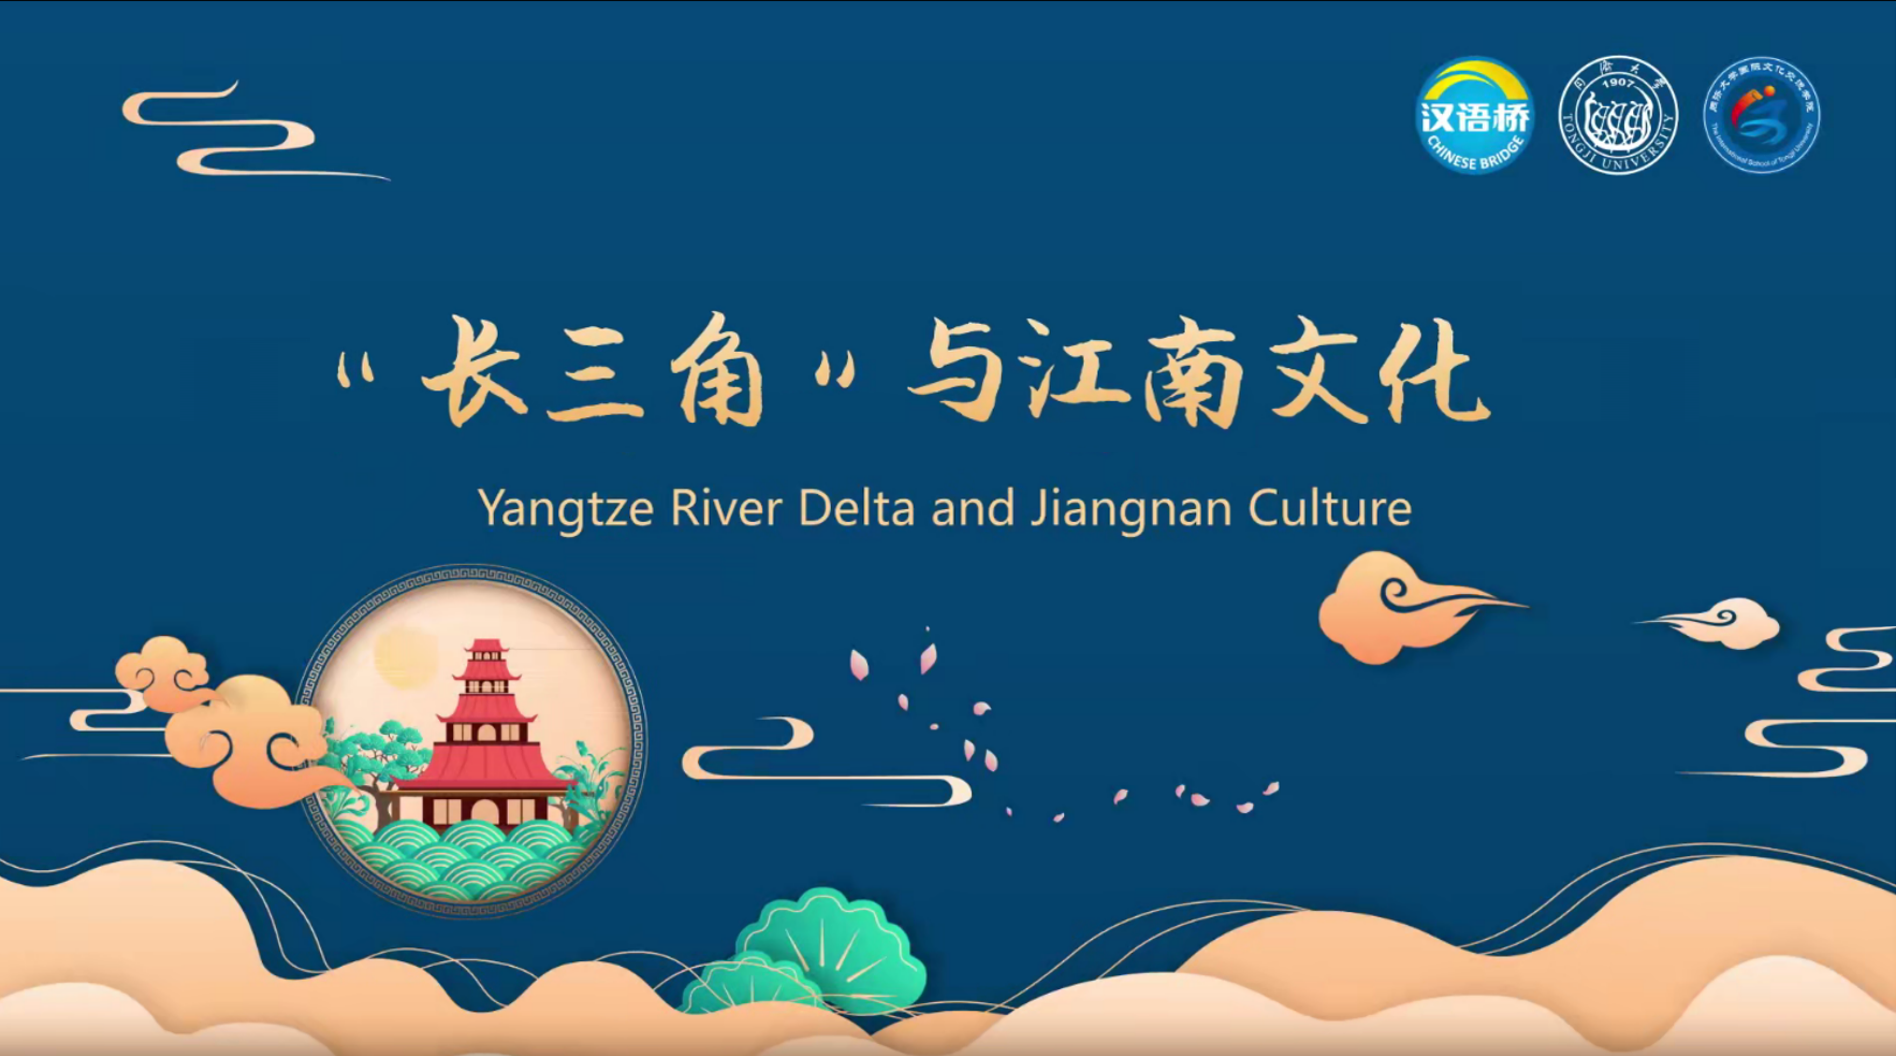 Yangtze River Delta and Jiangnan Culture